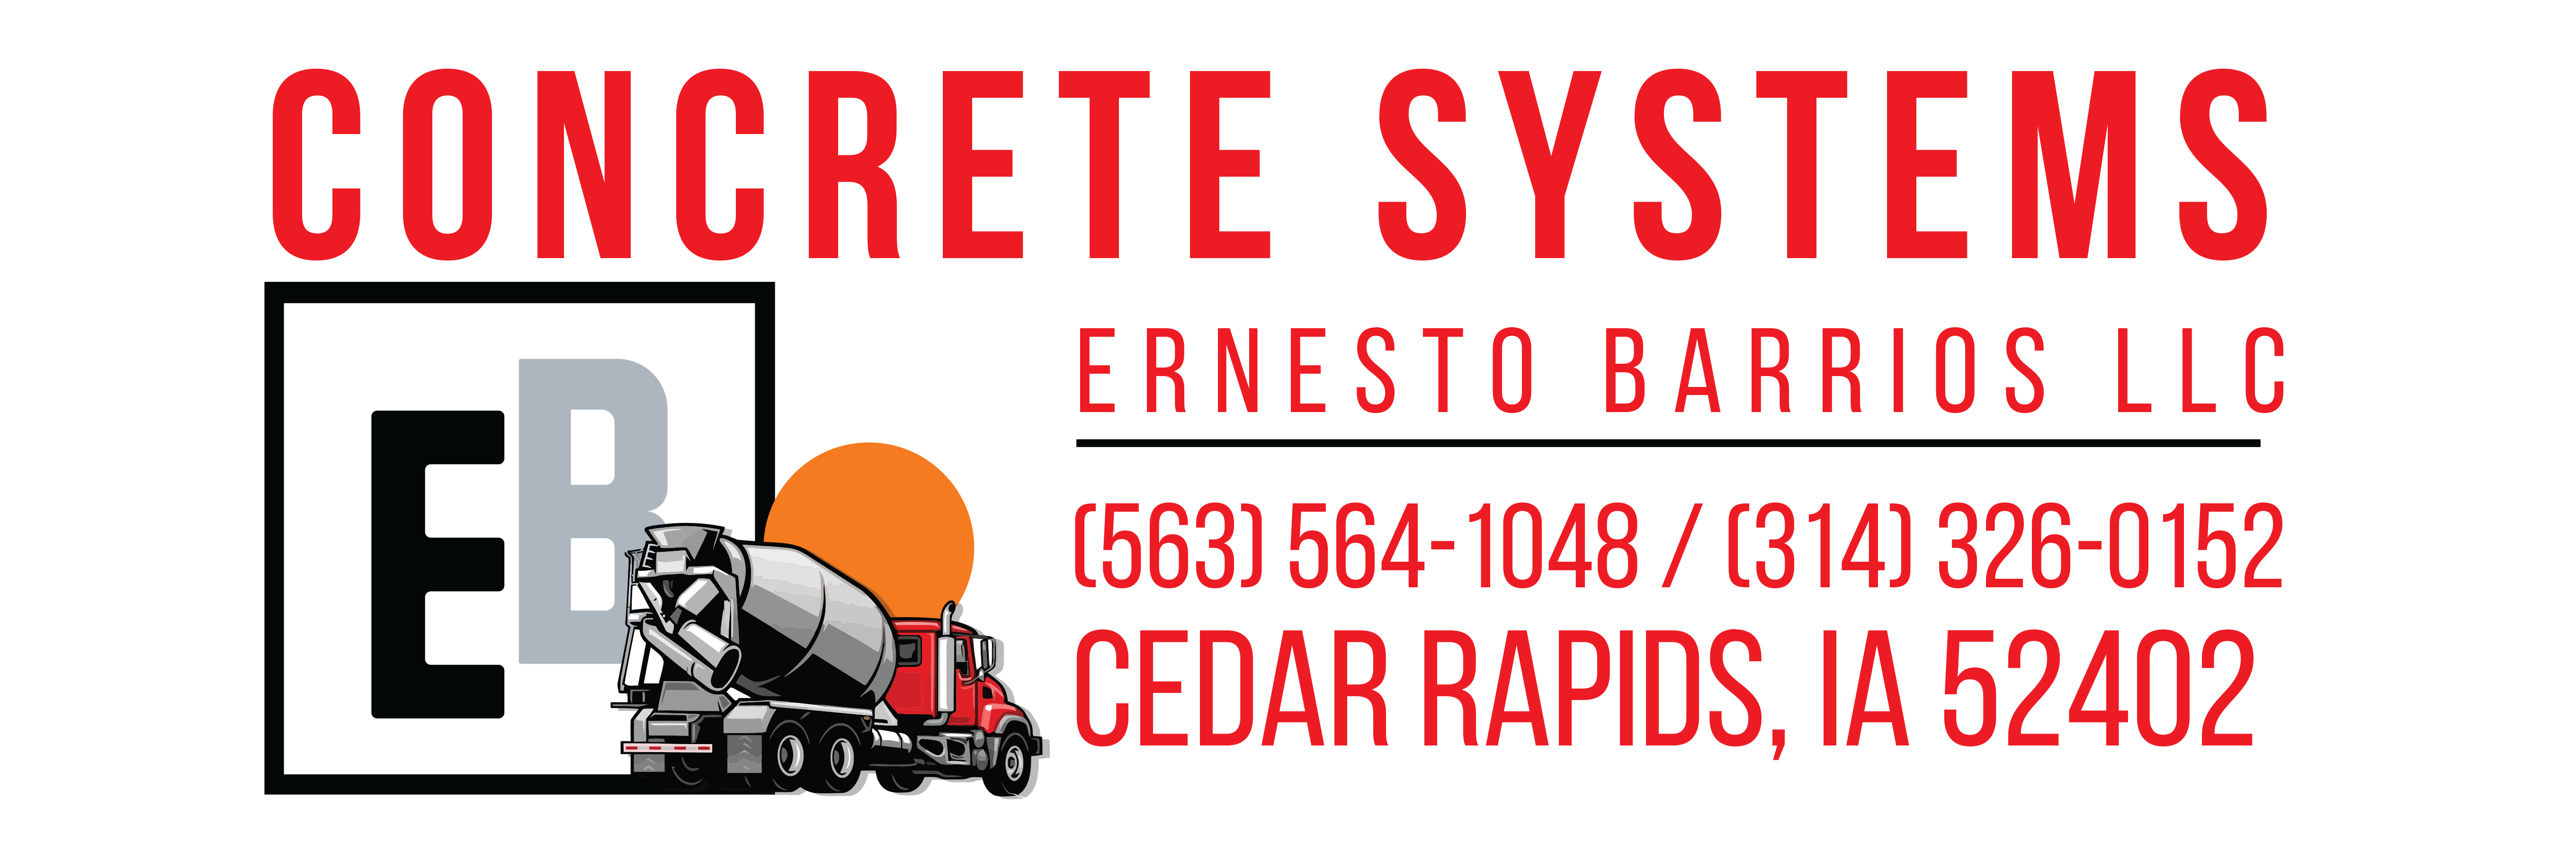 Concrete Systems Ernesto Barrios LLC